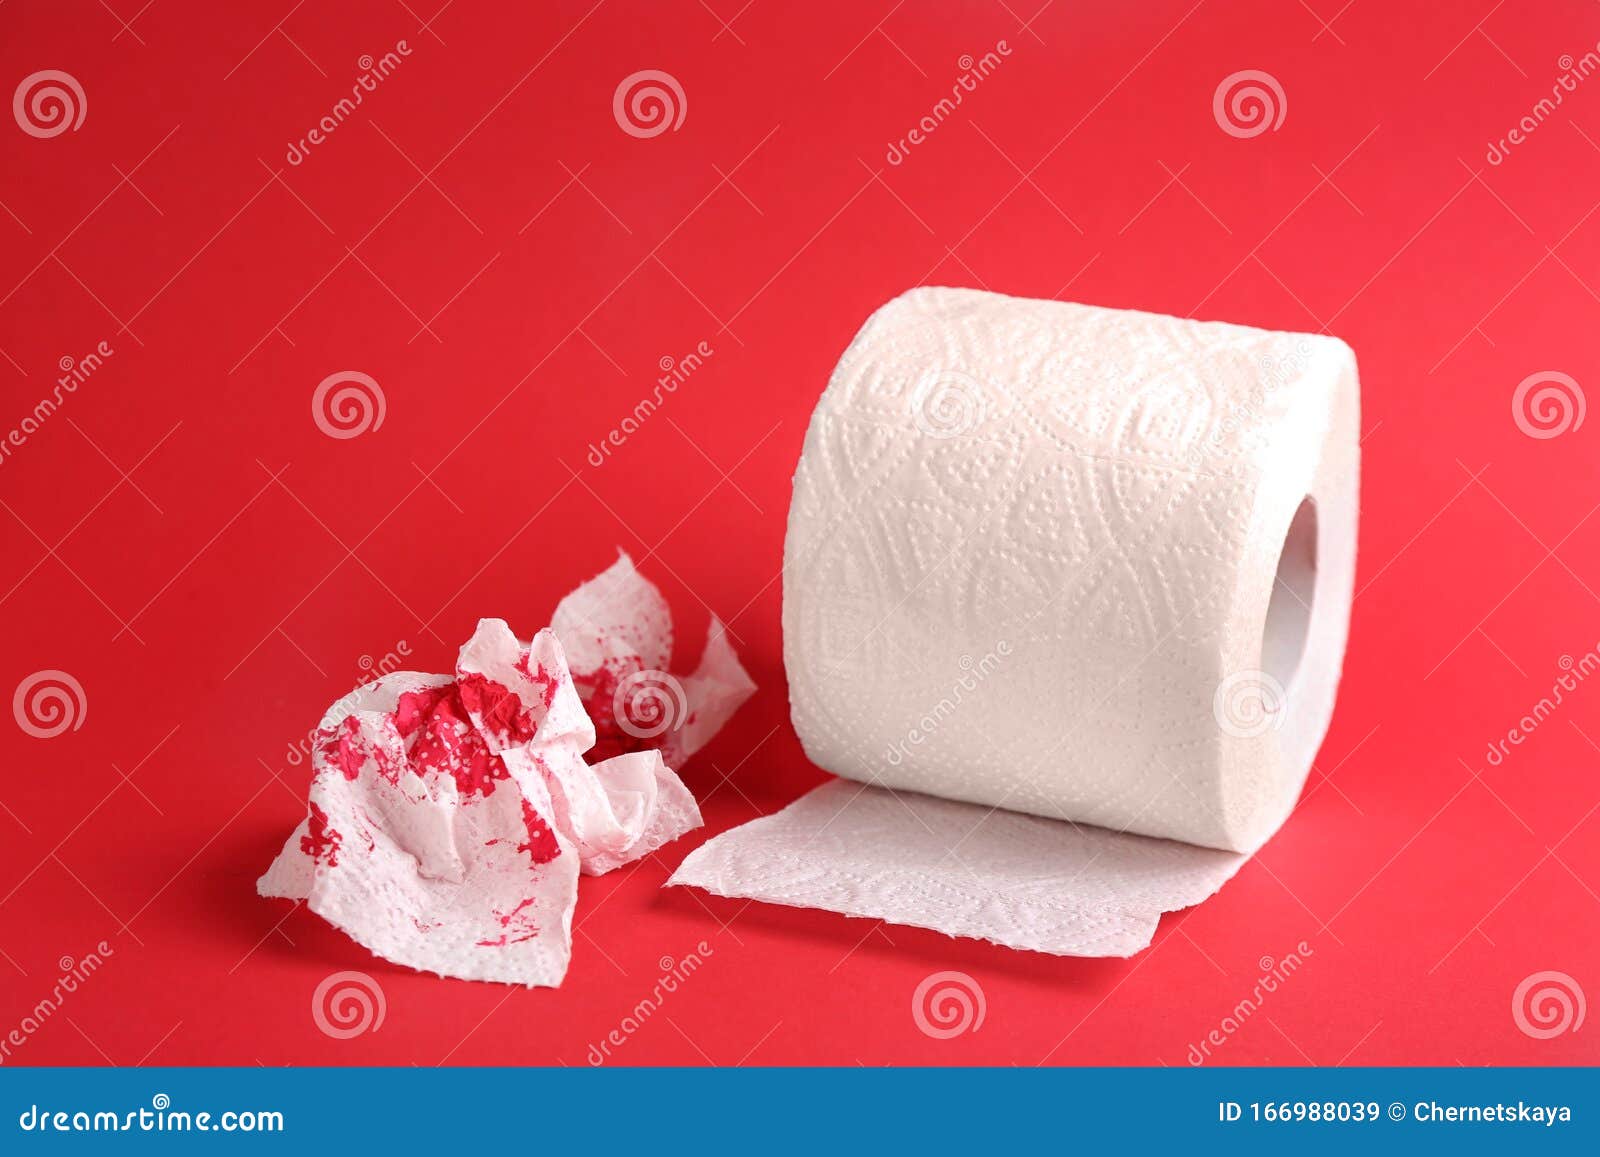 Кровь на туалетной бумаге мужчина. Кровь на туалетной бумаге. Туалетная бумага Кровавая. Розовая кровь на туалетной бумаге. Геморрой от туалетной бумаги.